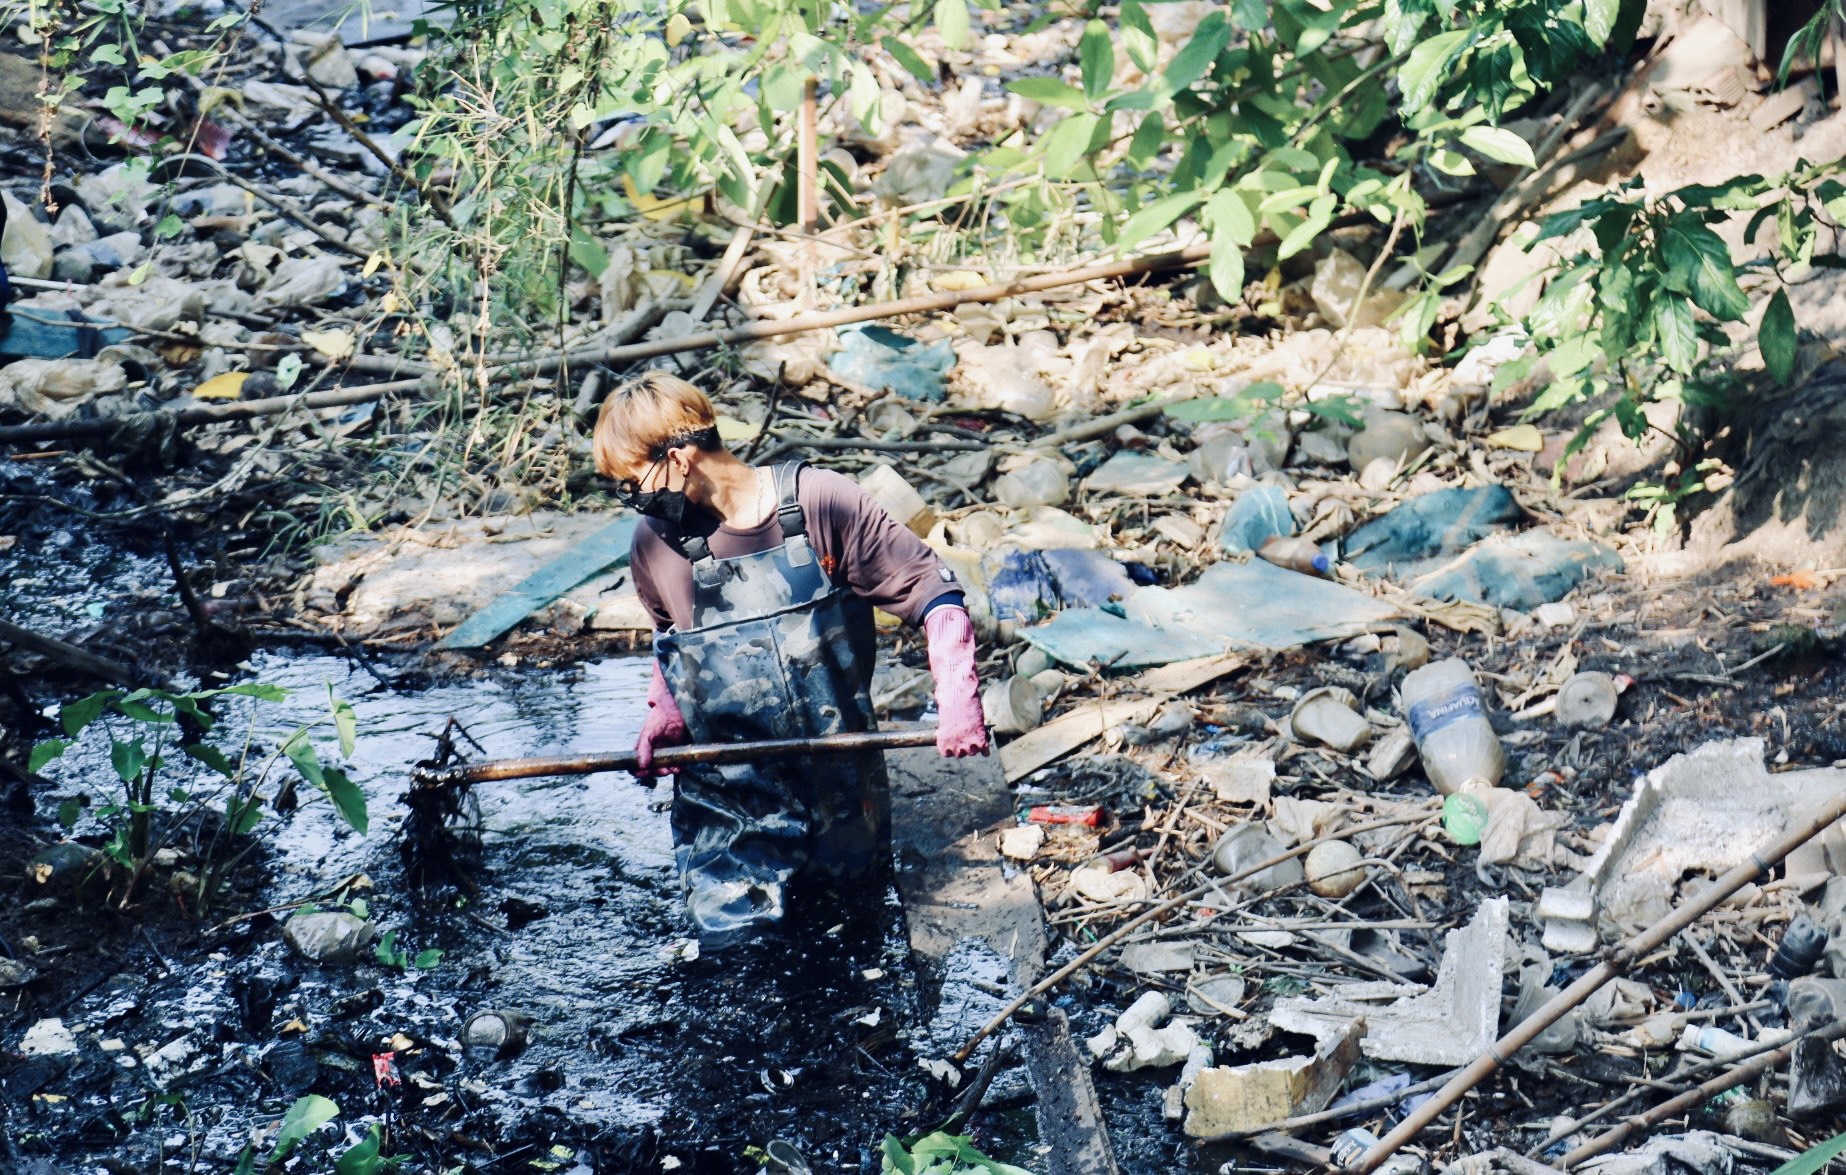 Gặp nhóm bạn trẻ ngâm mình trong kênh rạch để dọn sạch rác: “Tụi em muốn làm điều ý nghĩa cho Sài Gòn” - Ảnh 4.